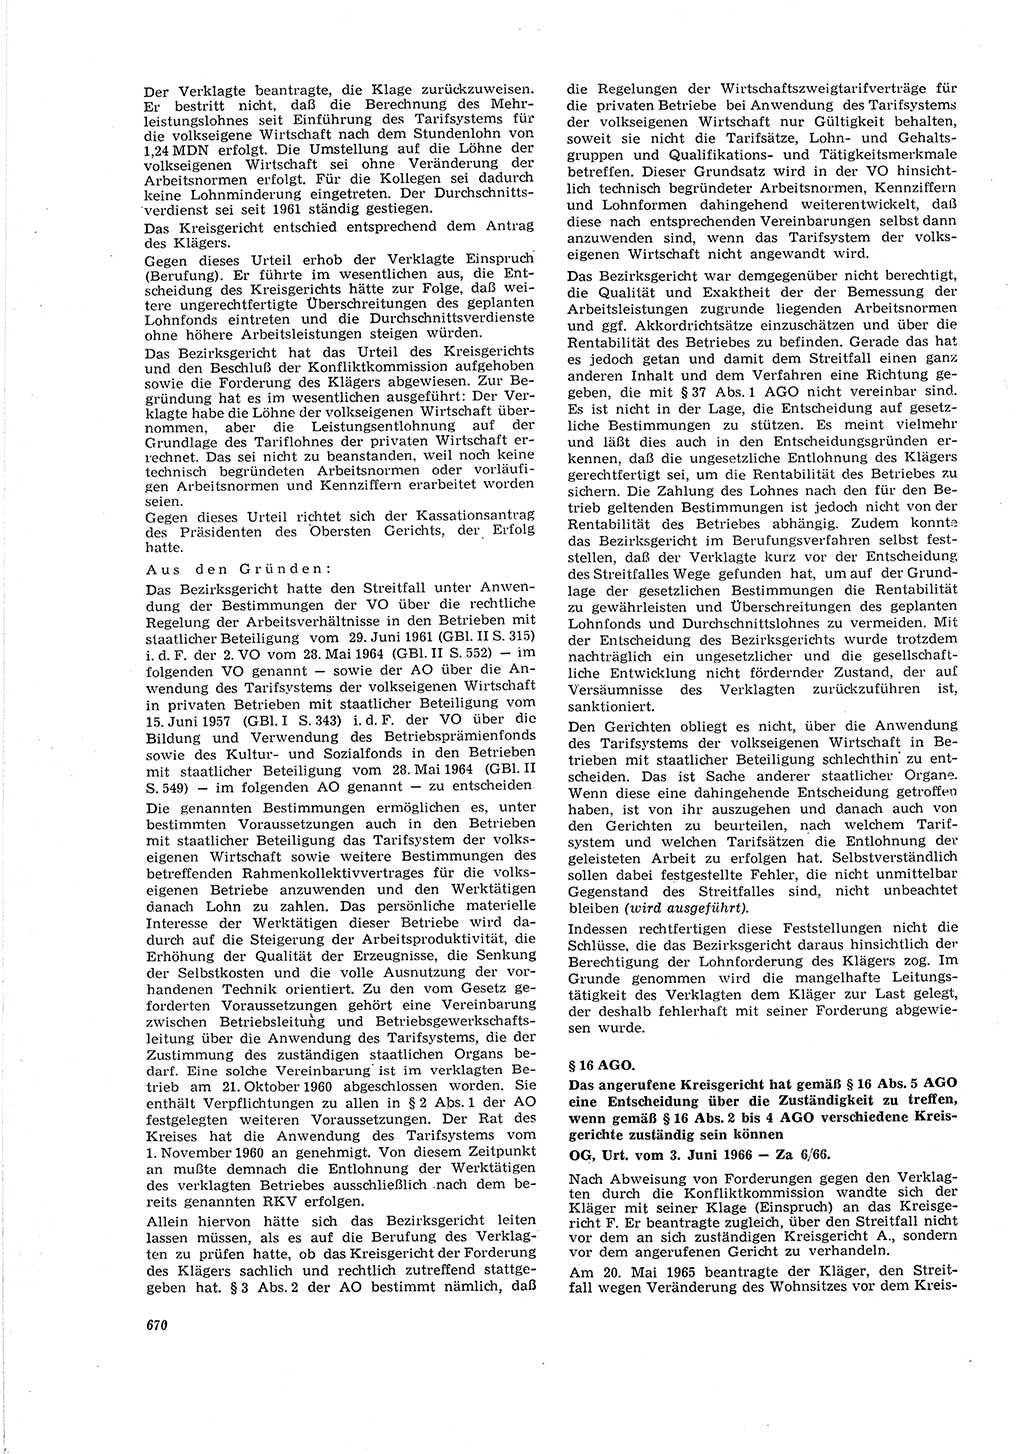 Neue Justiz (NJ), Zeitschrift für Recht und Rechtswissenschaft [Deutsche Demokratische Republik (DDR)], 20. Jahrgang 1966, Seite 670 (NJ DDR 1966, S. 670)